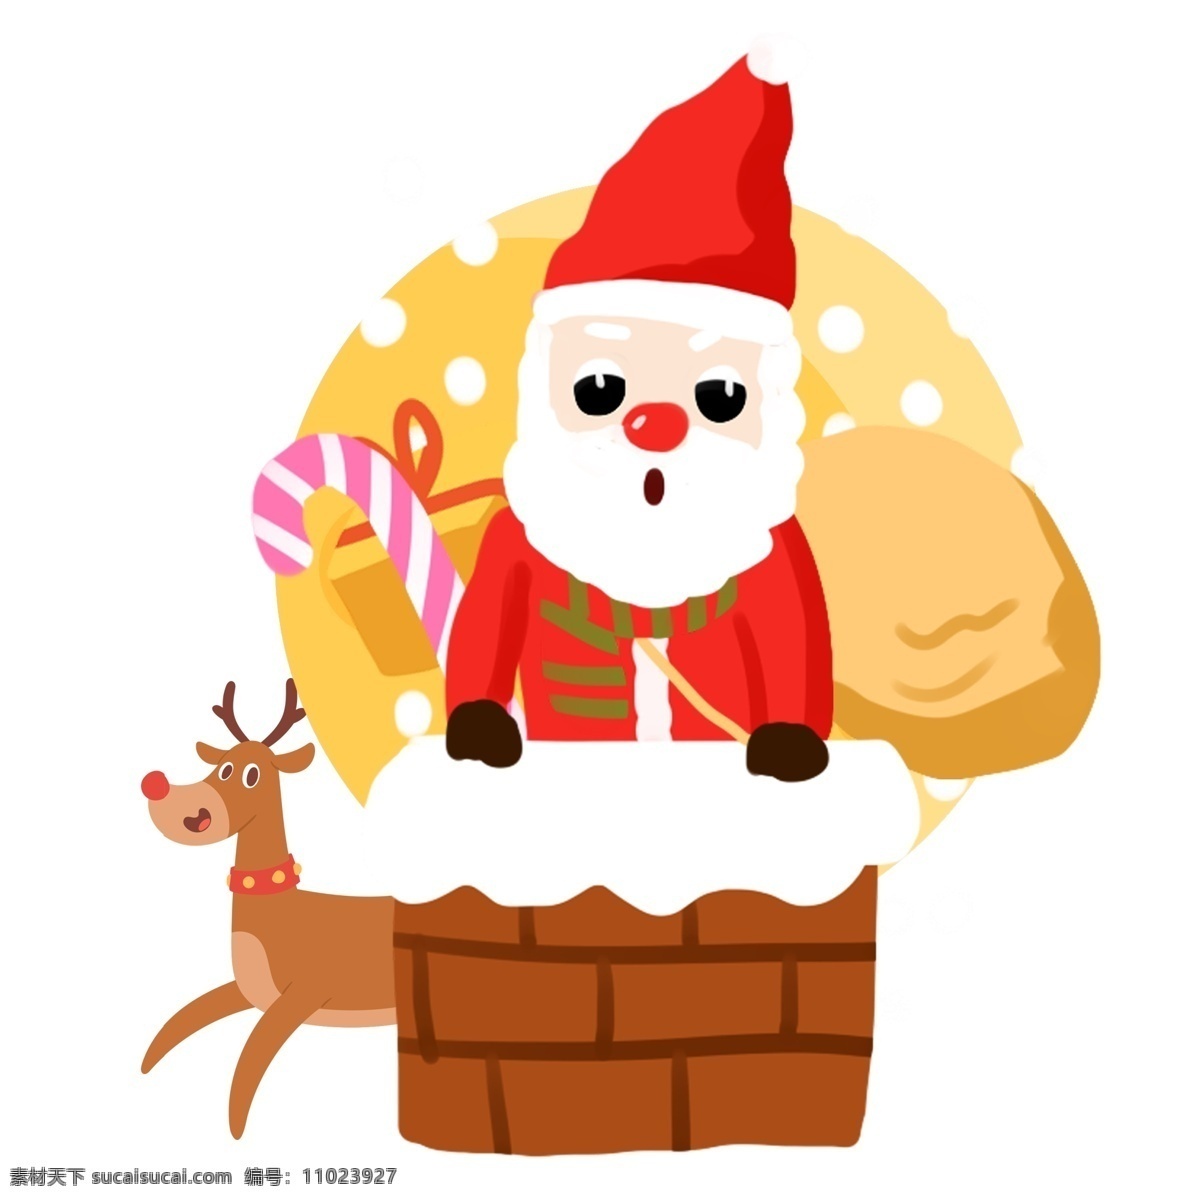 圣诞节 可爱 圣诞老人 卡通 插画 钻 烟囱 合集 圣诞 过节 节日 冬季 淘宝 天猫 海报 活动 促销 大促 送礼物的老人